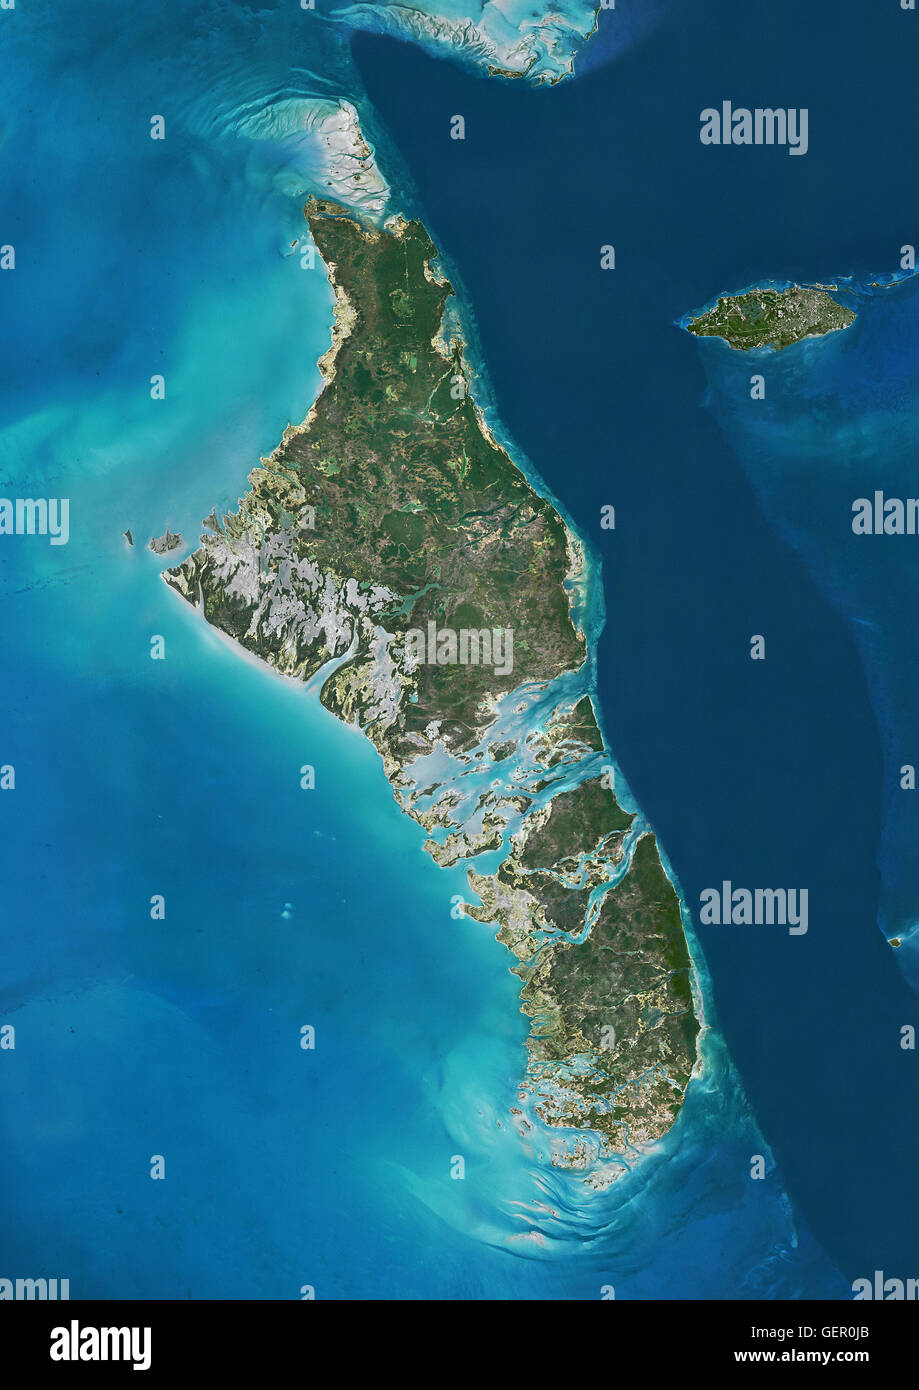 Vista satellitare delle isole di Andros e New Providence, Bahamas. New Providence è la più popolosa isola delle Bahamas e ospita la città capitale di Nassau. Questa immagine è stata elaborata sulla base dei dati acquisiti dai satelliti Landsat. Foto Stock